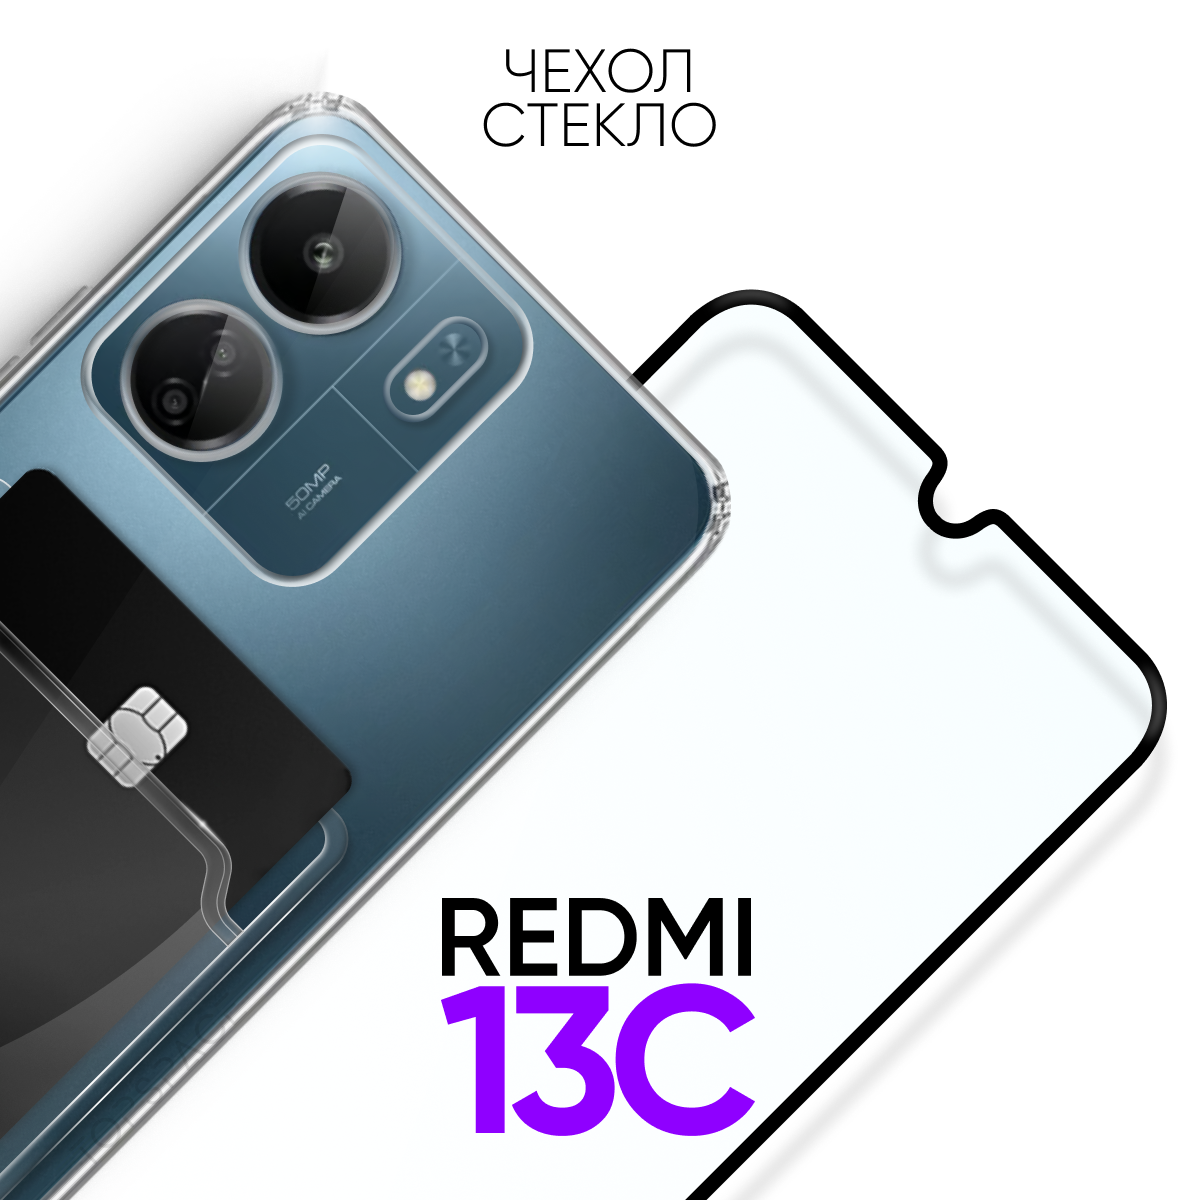 Комплект 2 в 1: Чехол №04 + стекло для Xiaomi Redmi 13C / противоударный прозрачный клип-кейс с карманом для карт и защитой камеры на Ксиоми Редми 13Ц